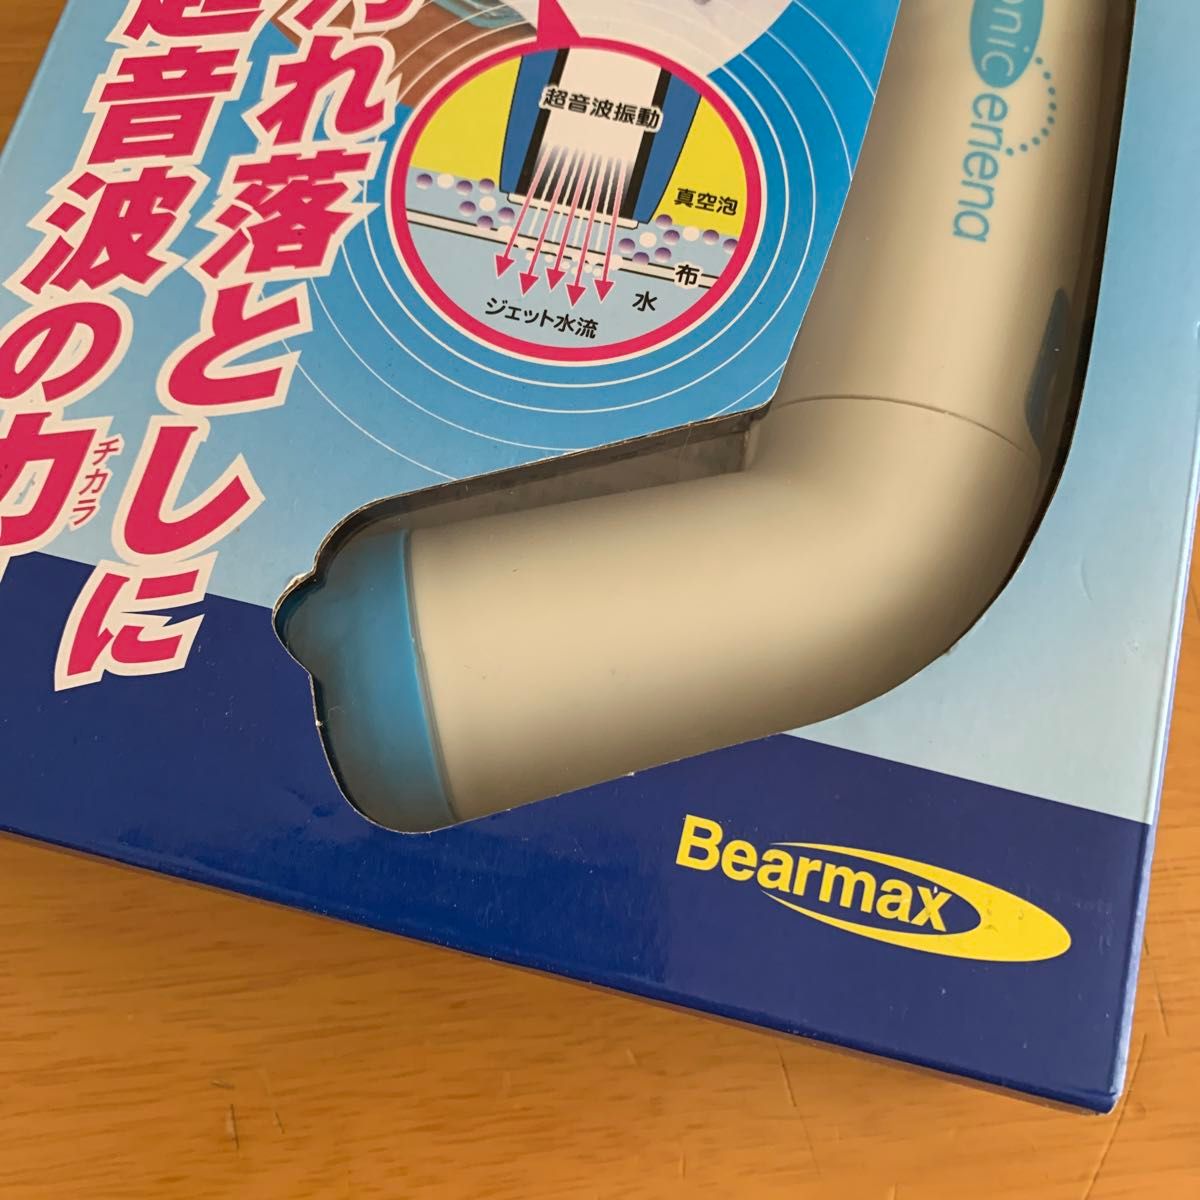 クマザキエイム Bearmax 「超音波の力でガンコな汚れを一掃」 充電式超音波洗浄器(ソニックエリーナ)新品未使用品